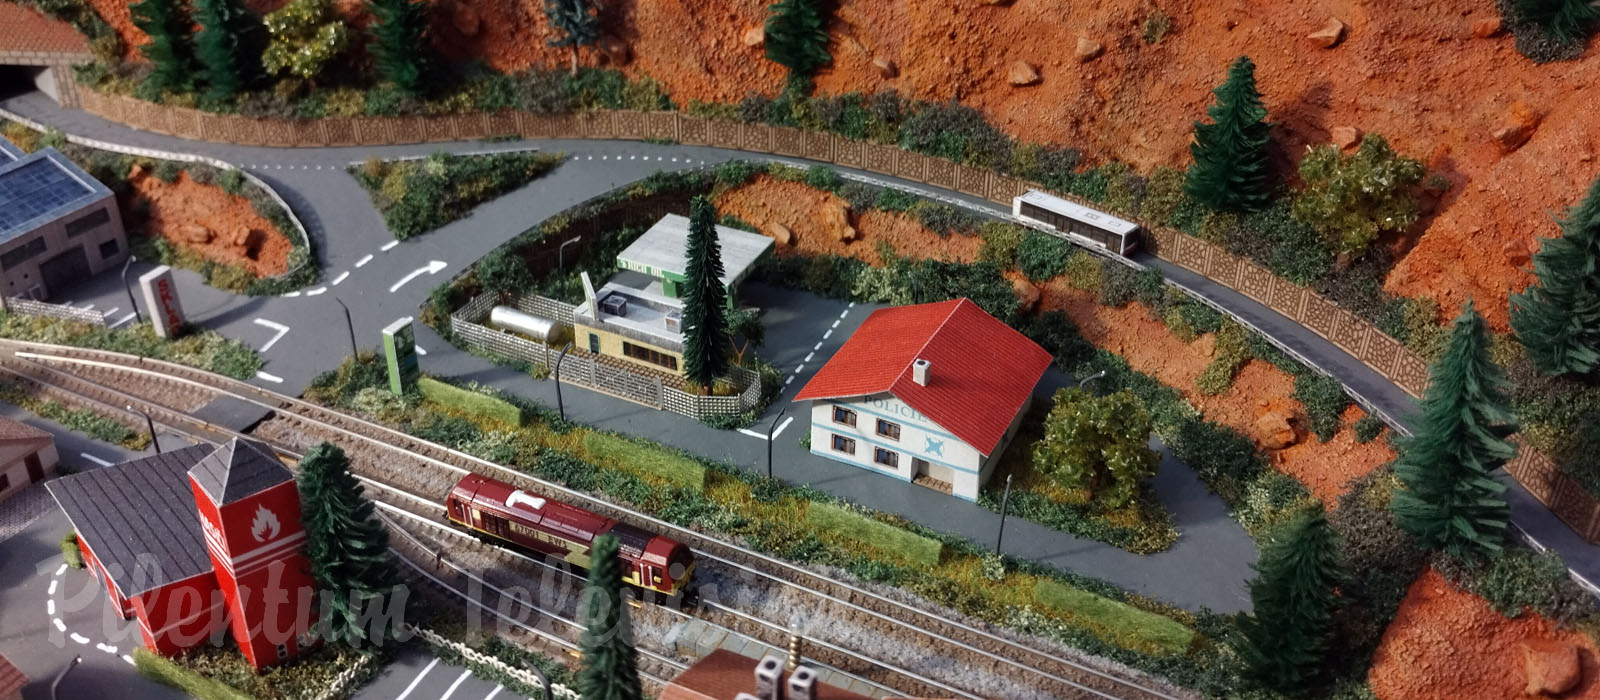 One of the Smallest Model Train Layouts - Micro Model Railroad in T Gauge by Richard Kříž